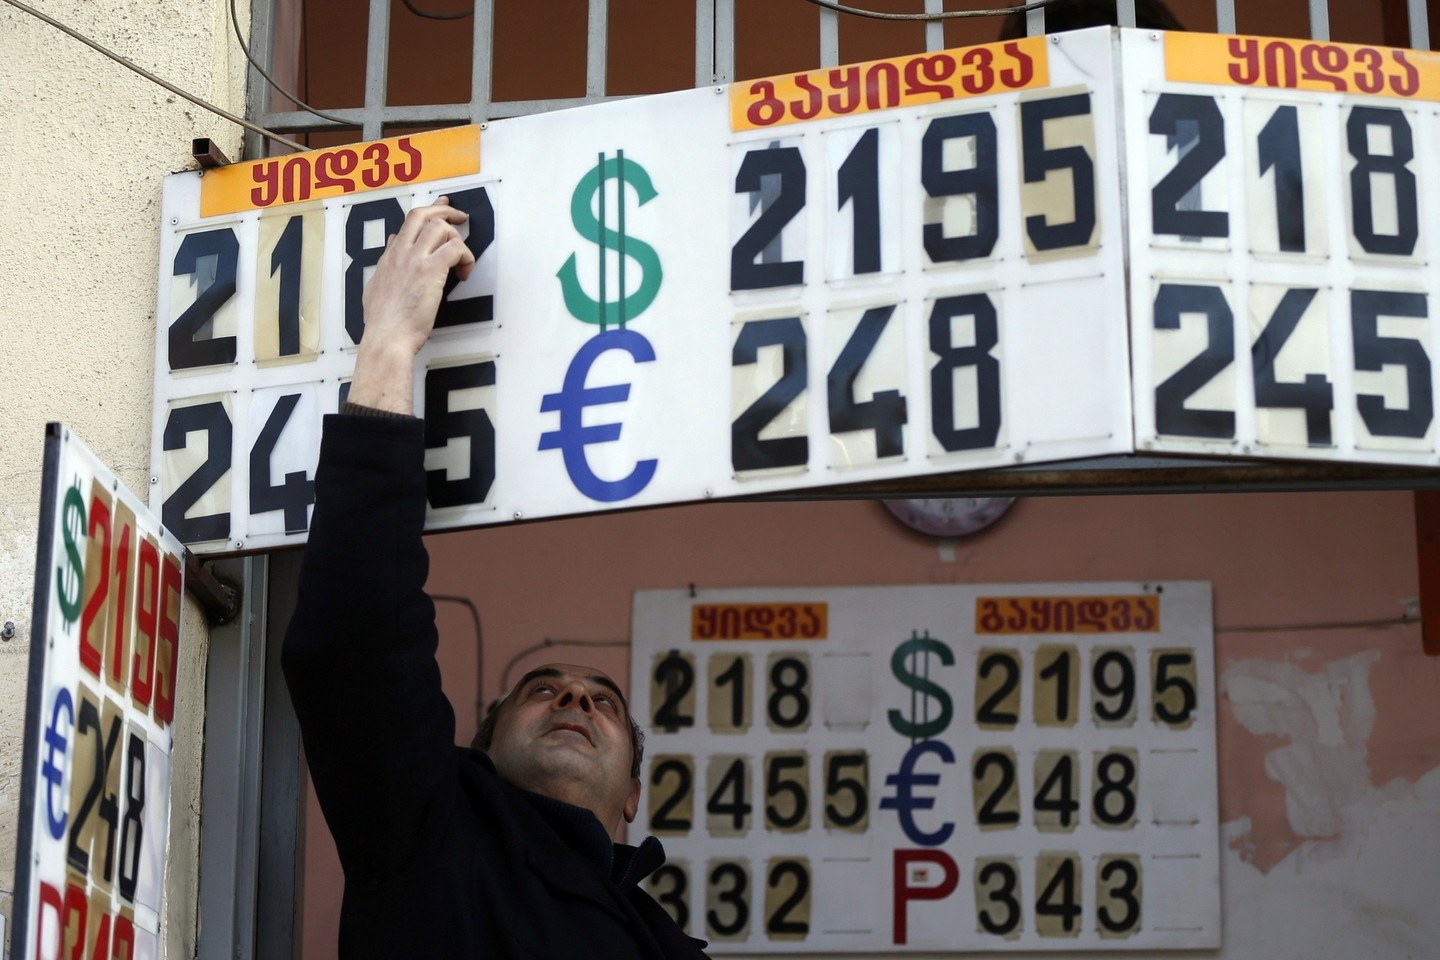 Nors atsiskaityti sava valiuta patogiau, bet tai gali nepigiai atsieiti.<br>Reuters/Scanpix nuotr.